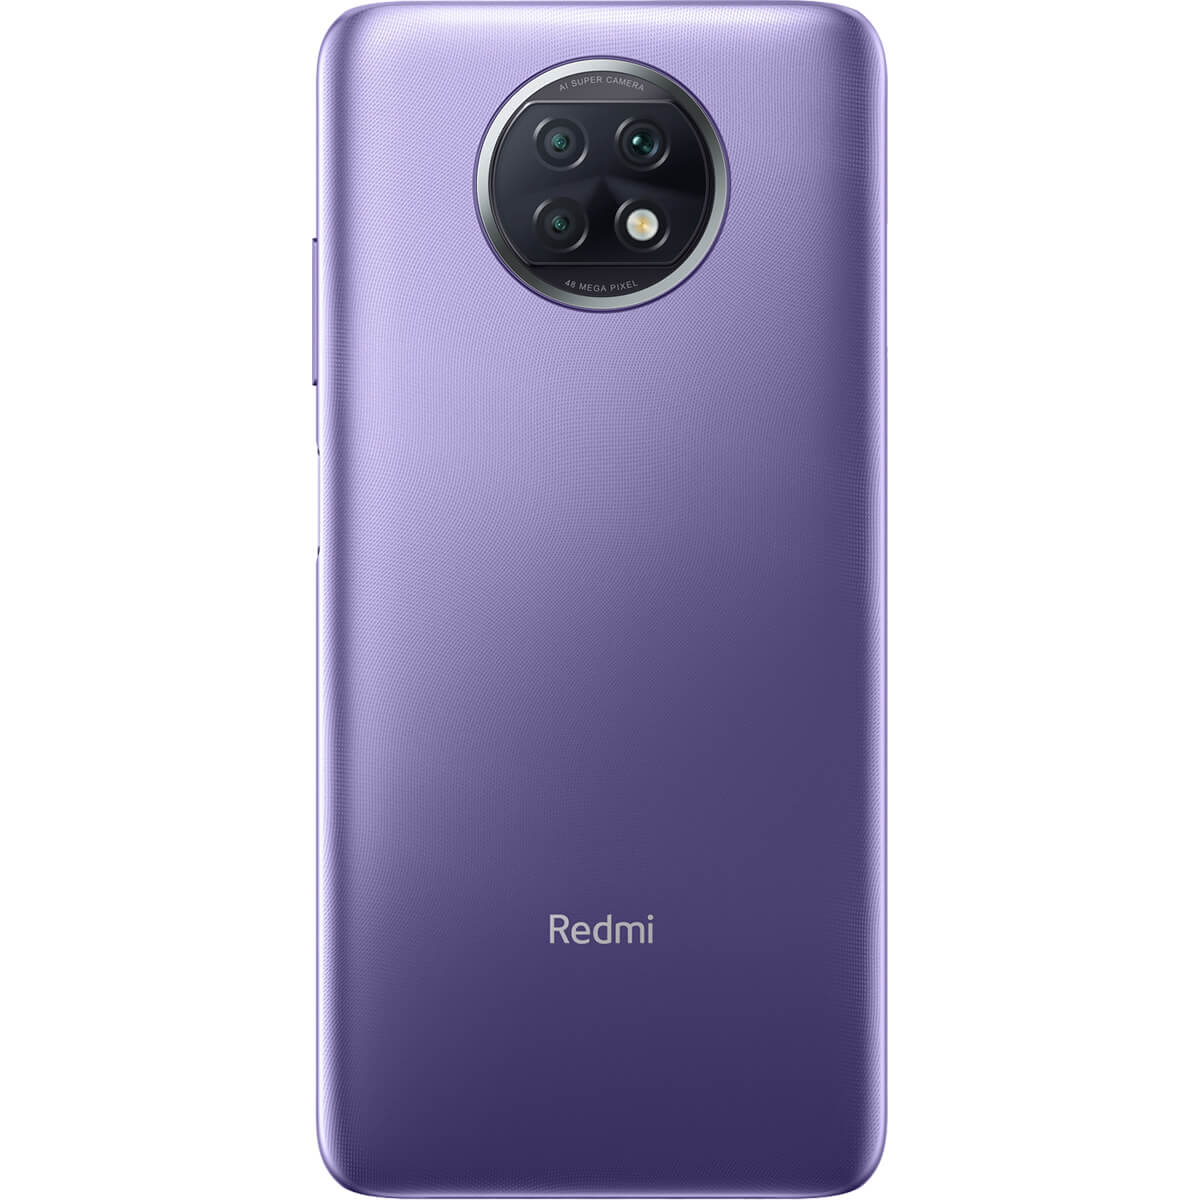 گوشی موبایل شیائومی Redmi Note 9T 5G ظرفیت 64 گیگابایت و رم 4 گیگابایت